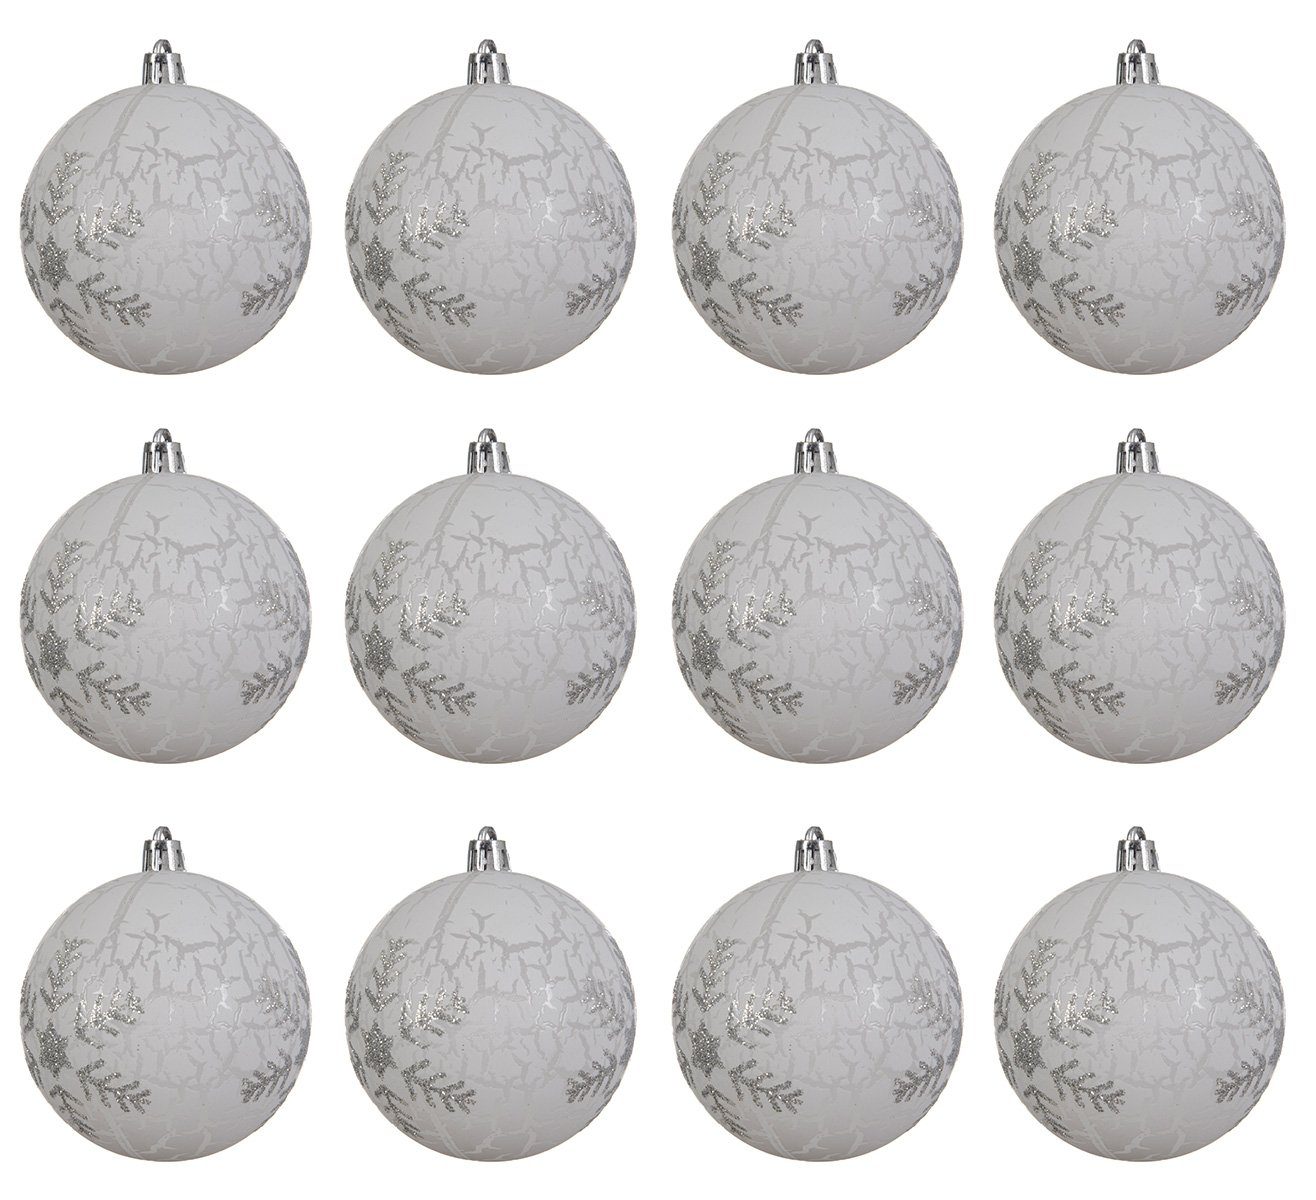 Decoris season - Kunststoff Motiv 8cm decorations Weiß Weihnachtsbaumkugel, Set 12er Schneeflocken Weihnachtskugeln